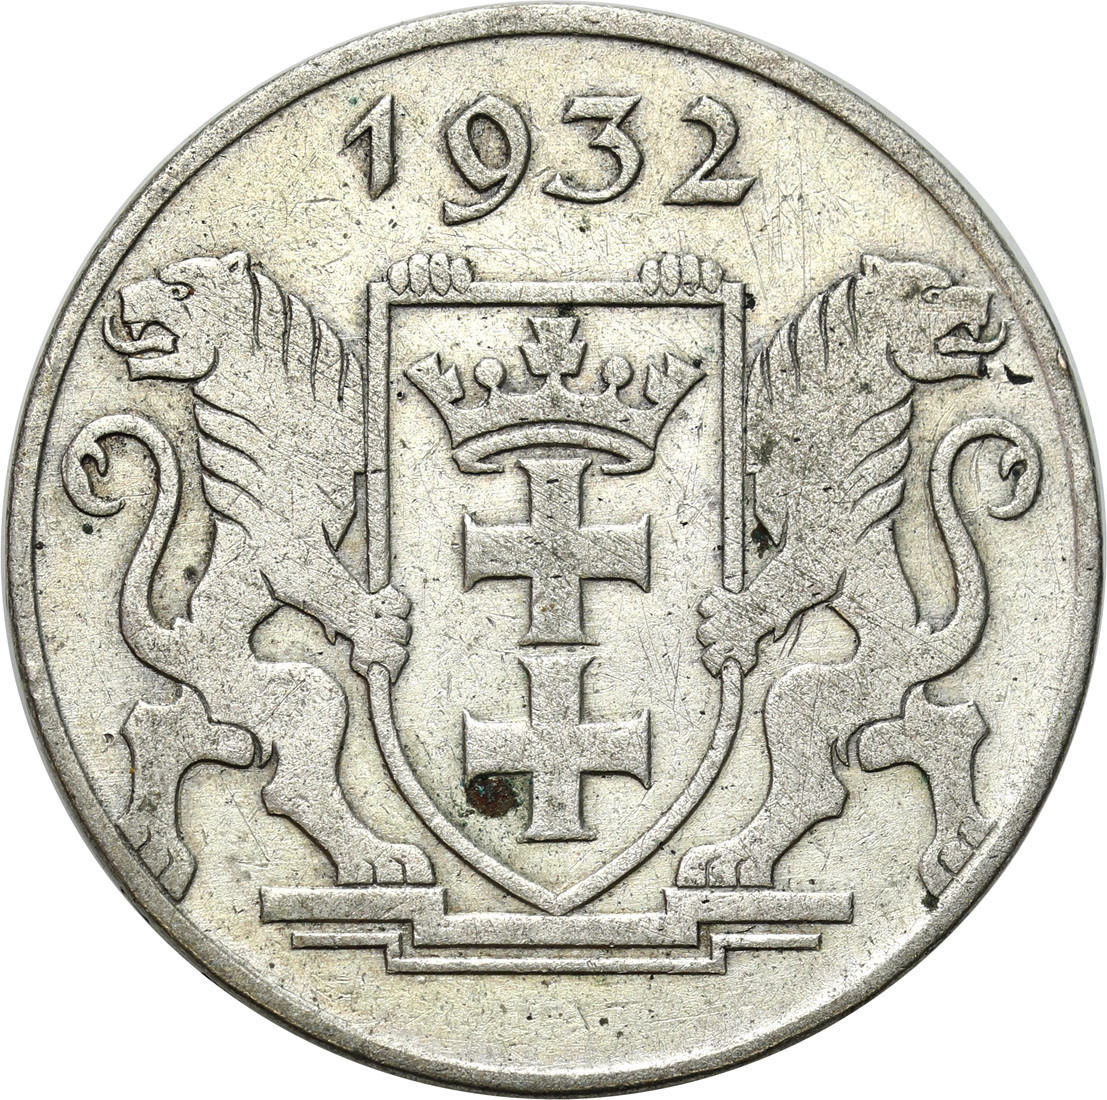 Wolne Miasto Gdańsk/Danzig. 2 Guldeny 1932 Koga